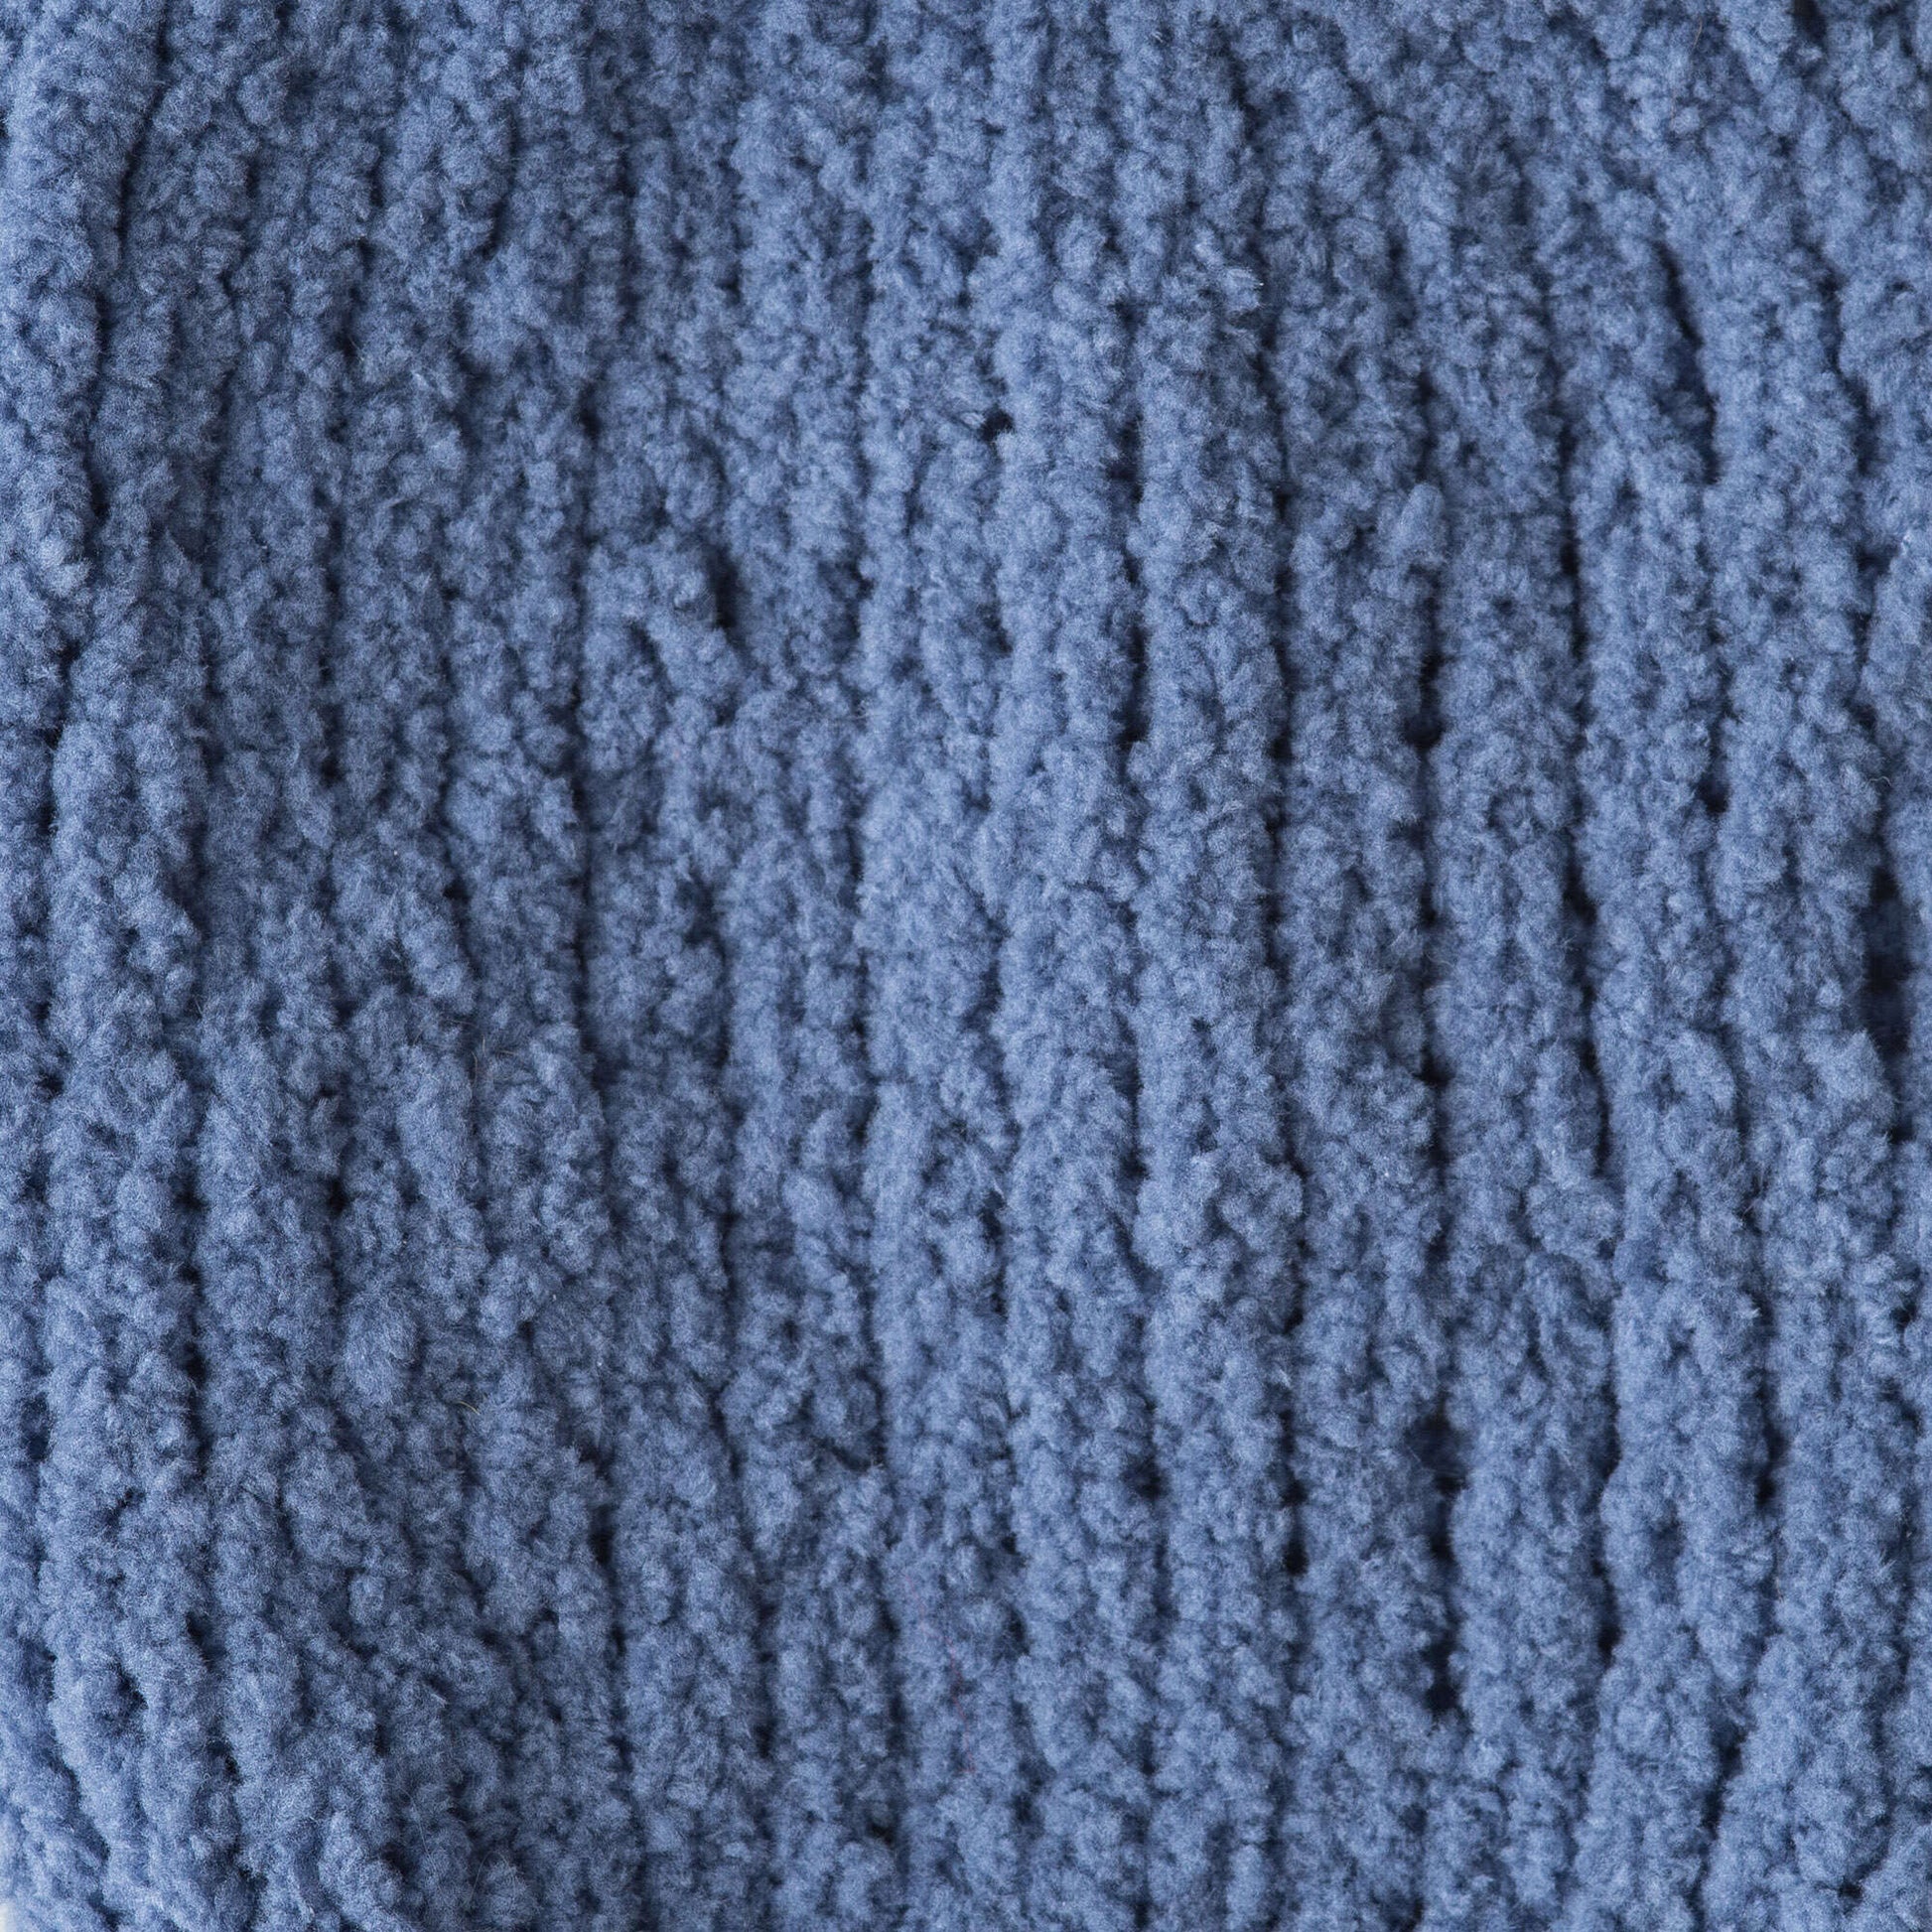 Bernat Baby Blanket Tiny Yarn - Discontinued Shades Dungarees